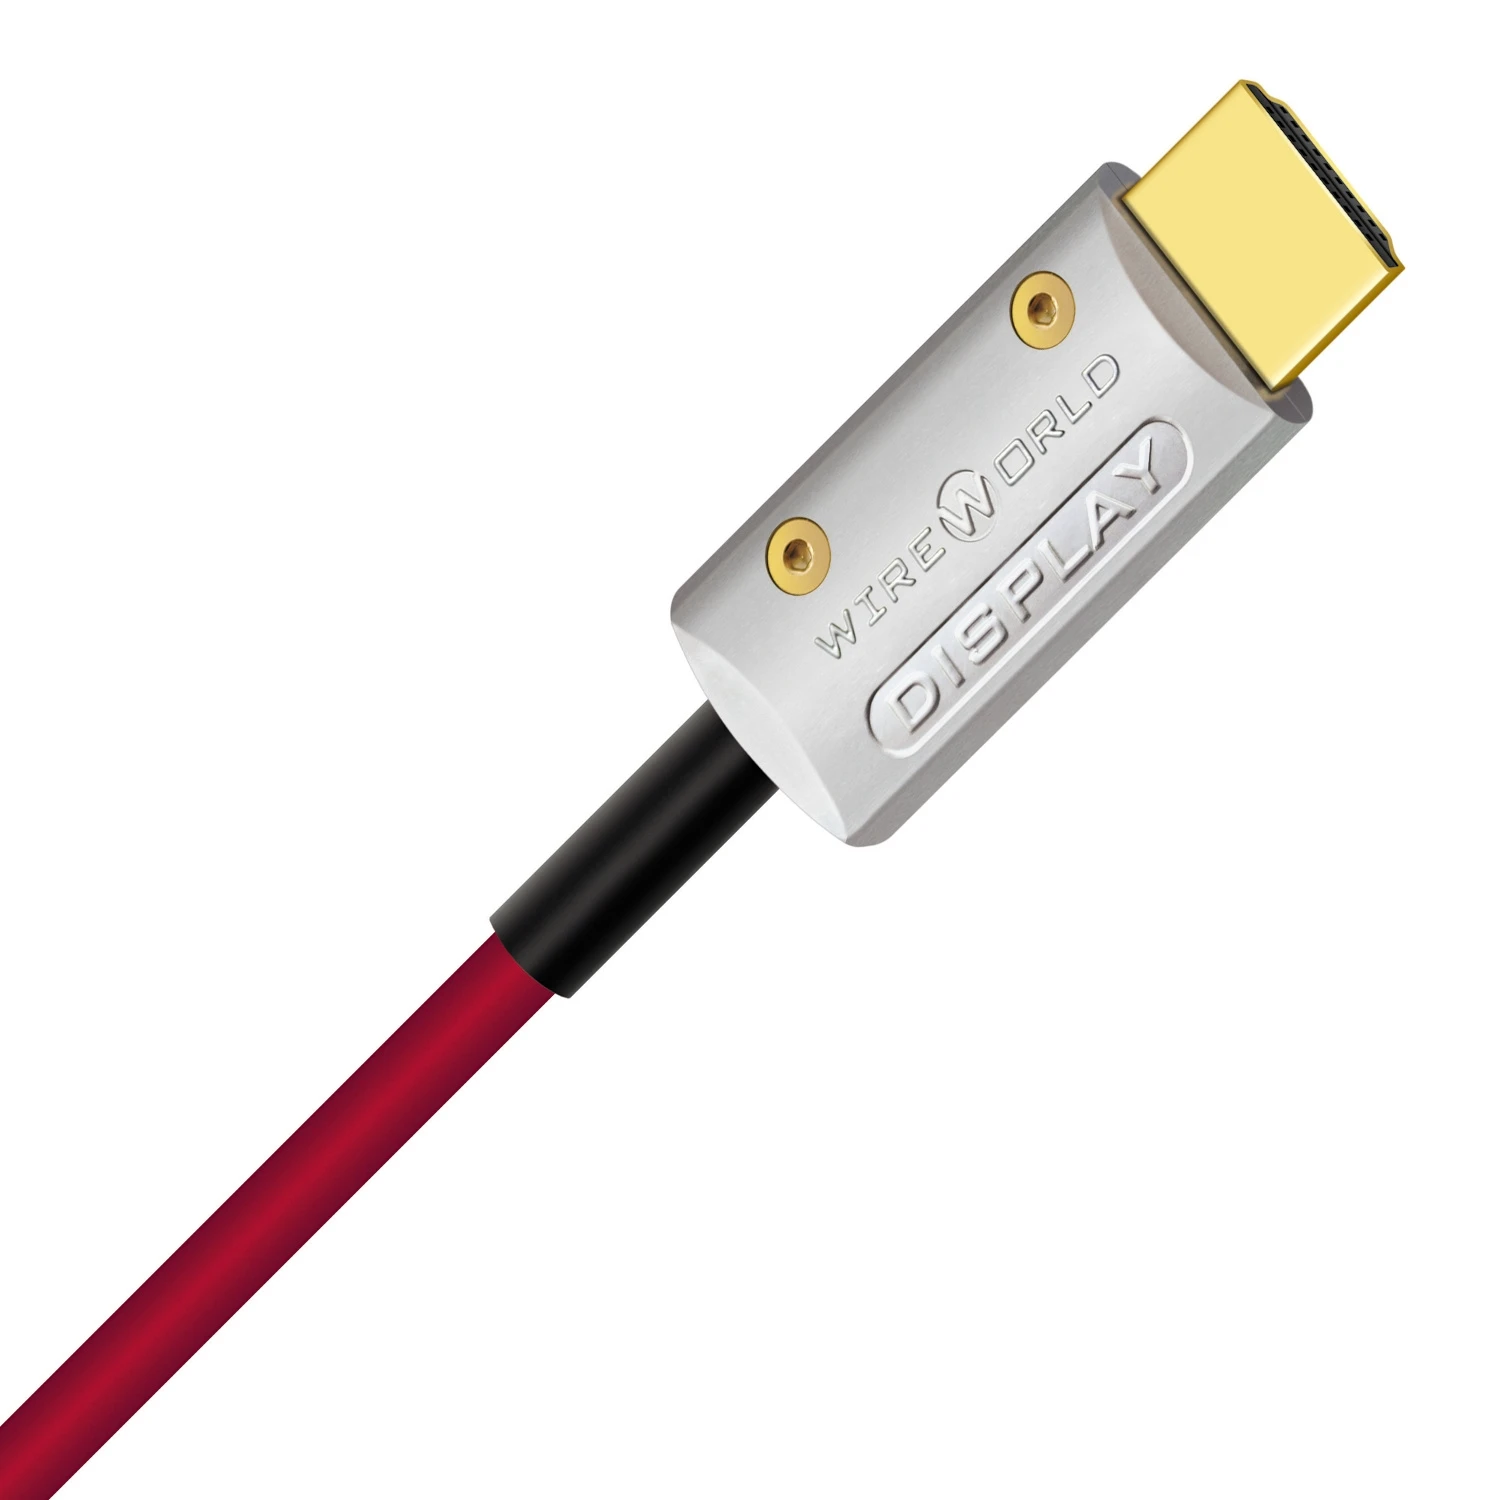 Wireworld-Starlight-Fiber-Optic-HDMI-Cable